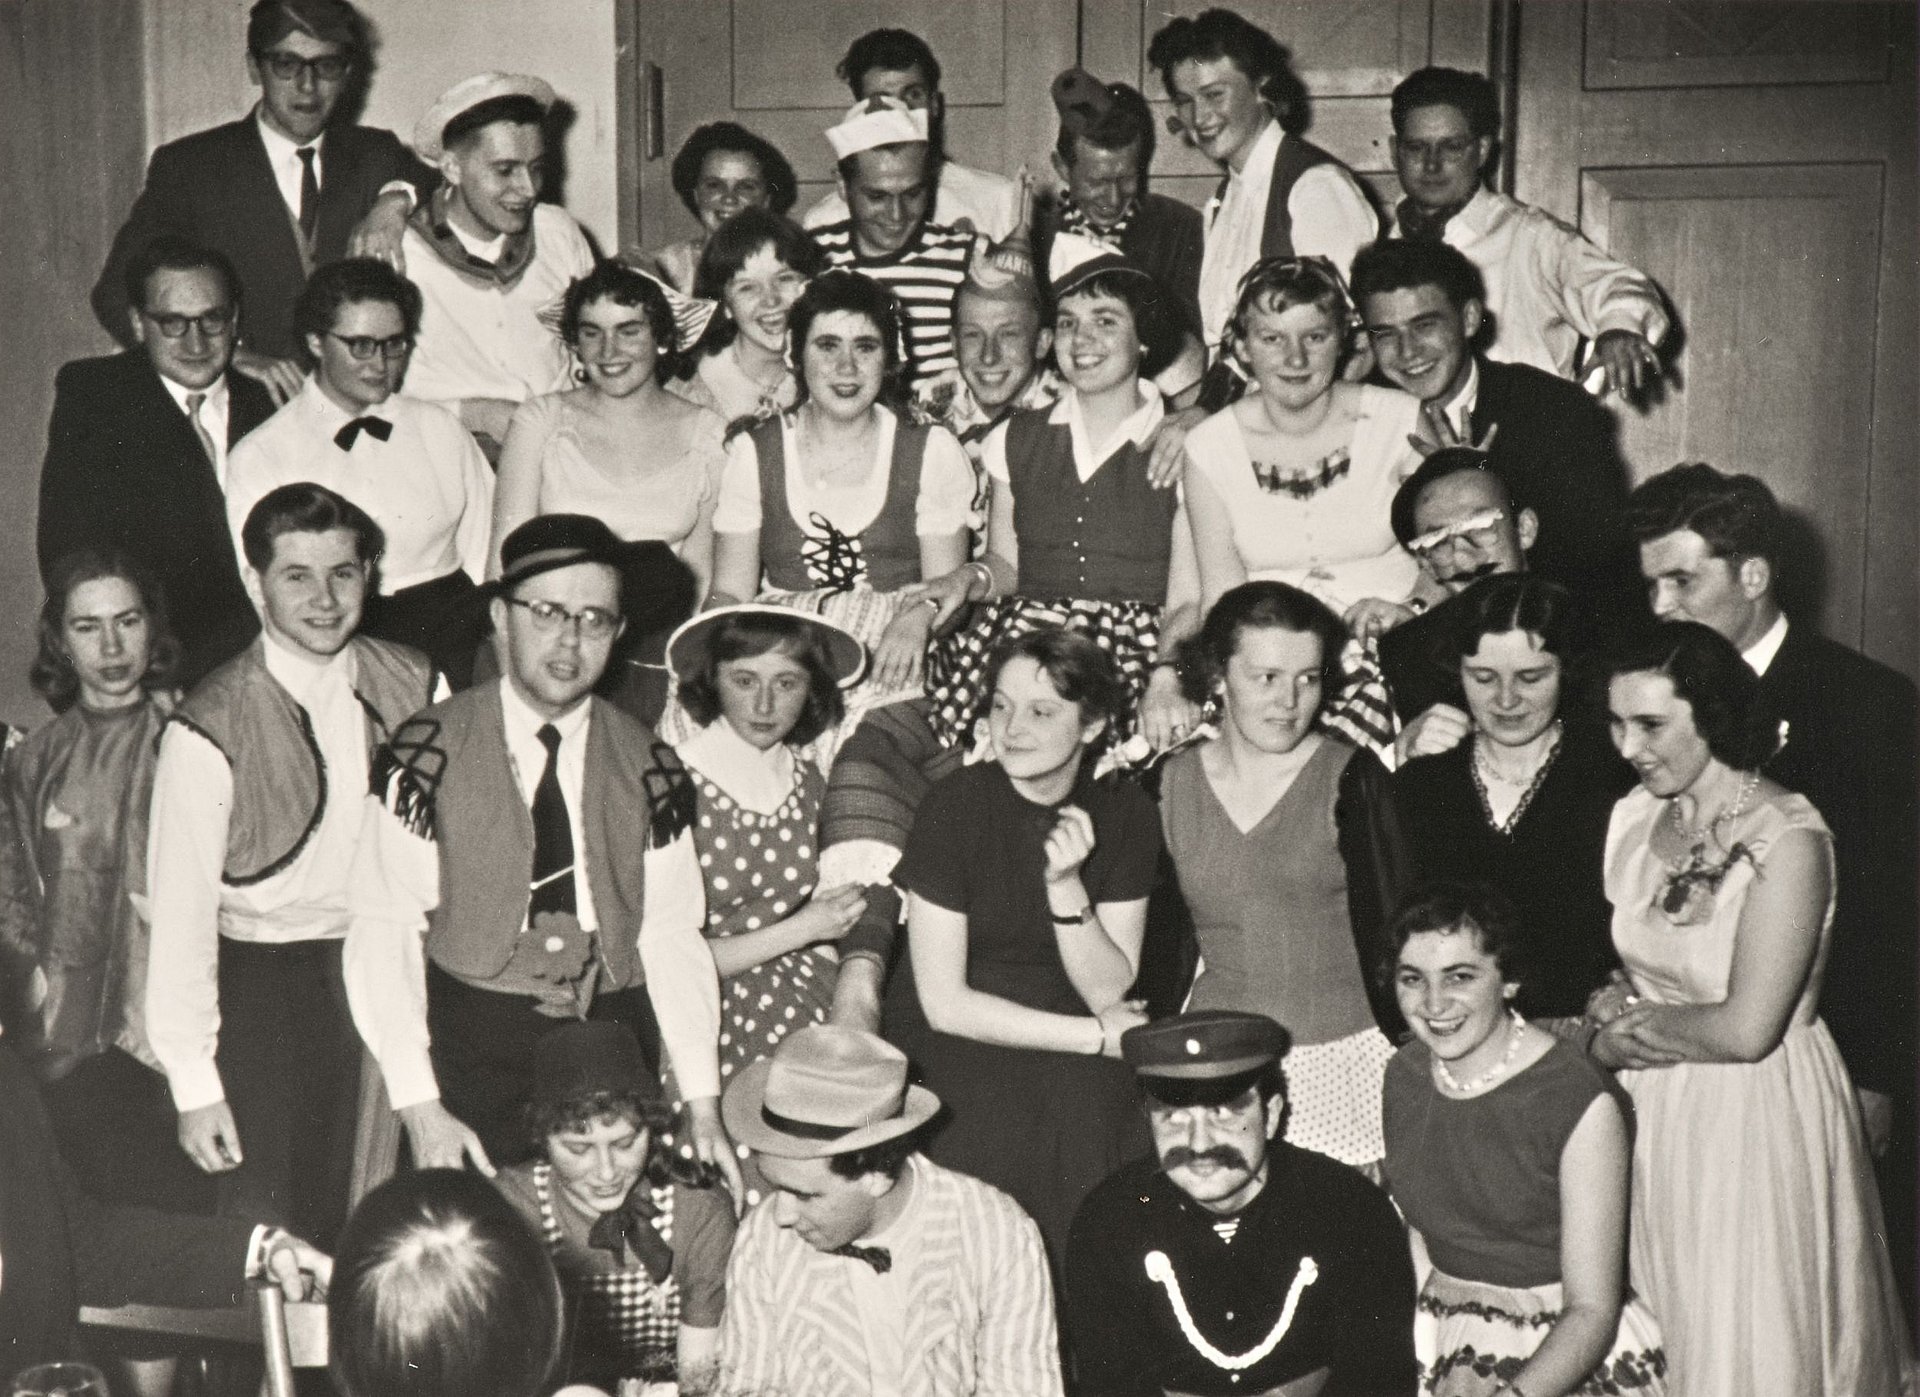 TUM students celebrating carnival in the 1960s.